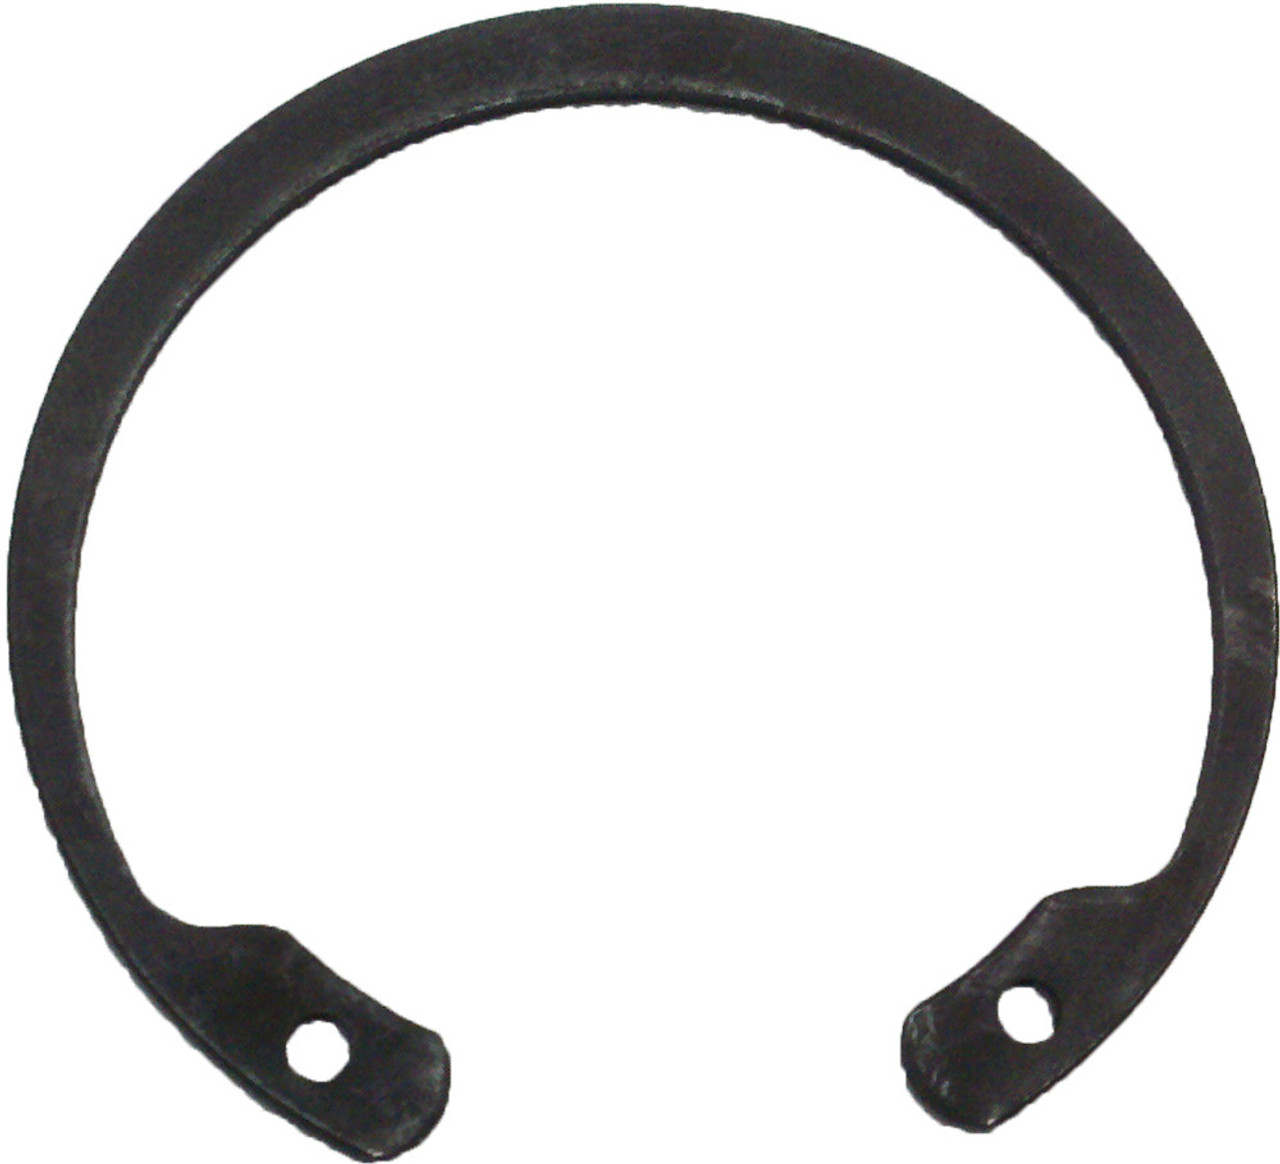 Idler Wheel  Replacement Snap Ring compatible with Arctic Cat, Polaris, Ski-Doo, Yamaha Part# 12-4638